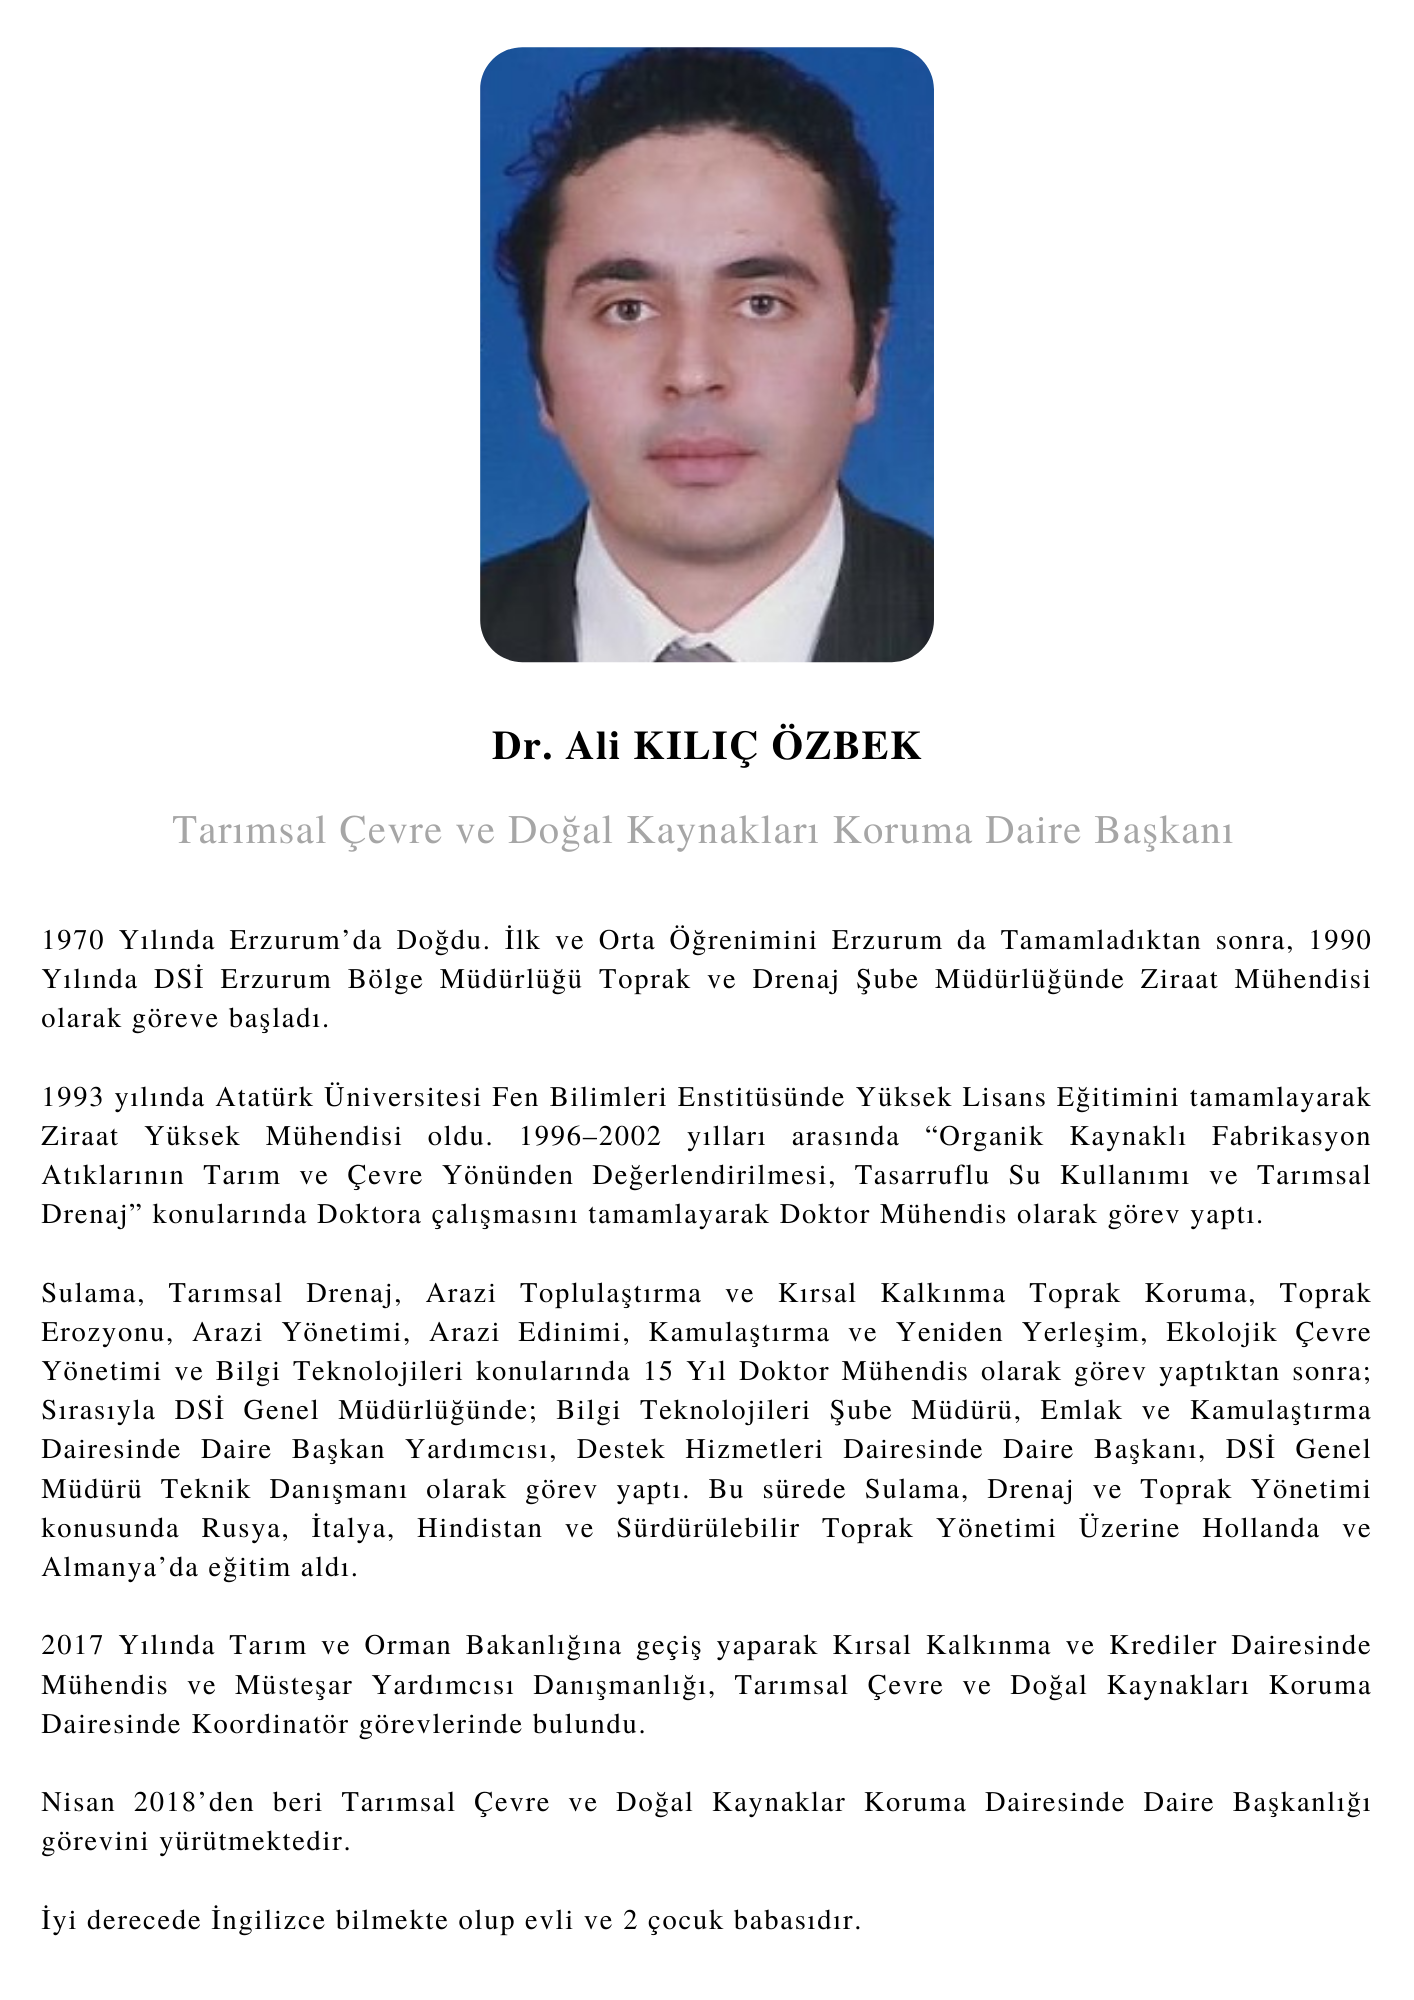 Dr Ali Kılıç ÖZBEK.png